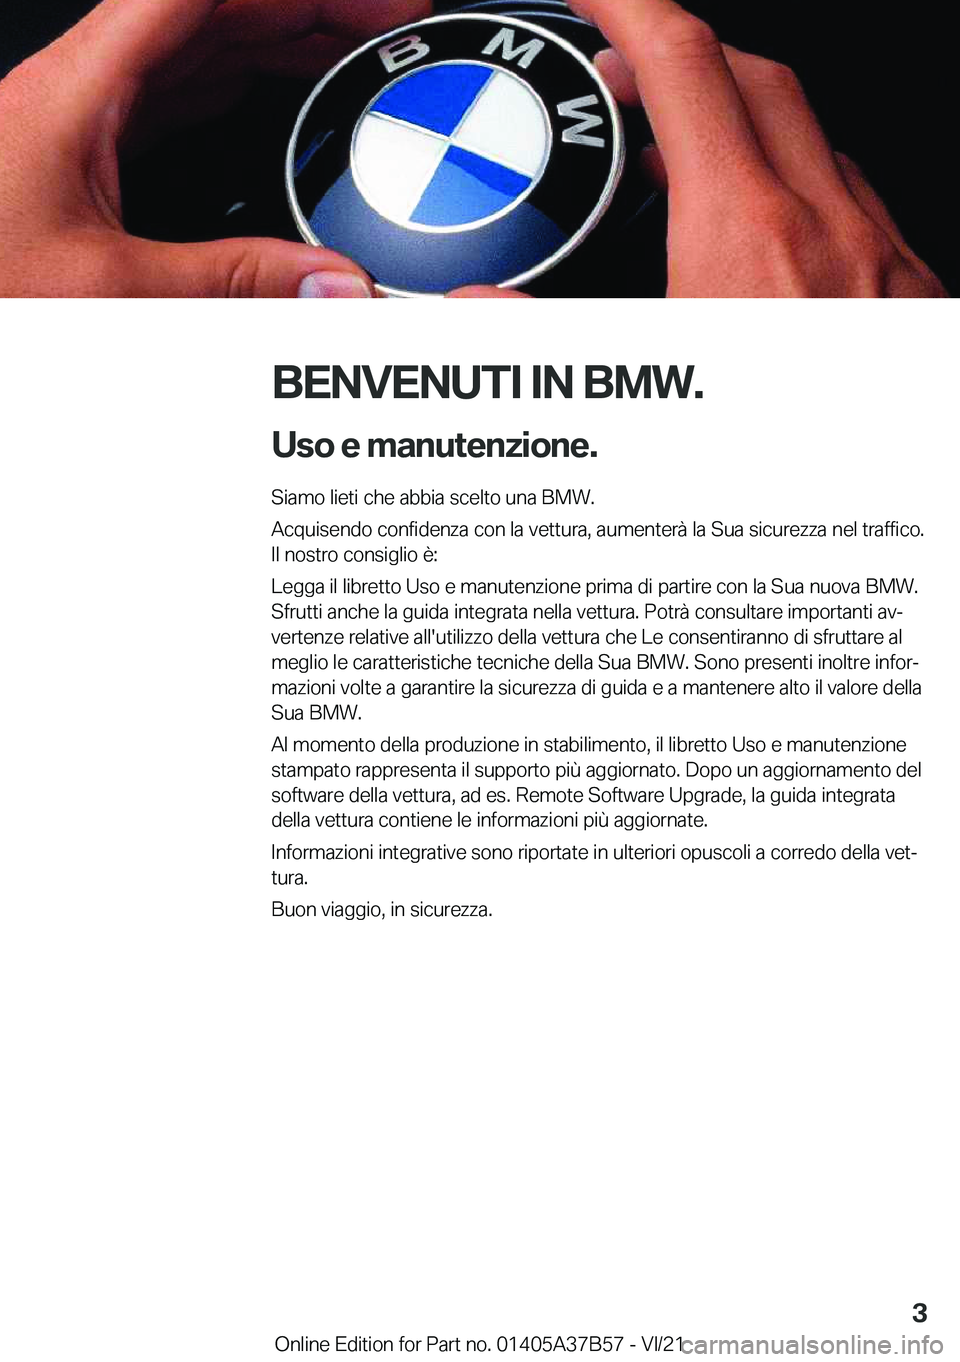 BMW M8 2022  Libretti Di Uso E manutenzione (in Italian) �B�E�N�V�E�N�U�T�I��I�N��B�M�W�.�U�s�o��e��m�a�n�u�t�e�n�z�i�o�n�e�.
�S�i�a�m�o��l�i�e�t�i��c�h�e��a�b�b�i�a��s�c�e�l�t�o��u�n�a��B�M�W�.
�A�c�q�u�i�s�e�n�d�o��c�o�n�f�i�d�e�n�z�a��c�o�n�